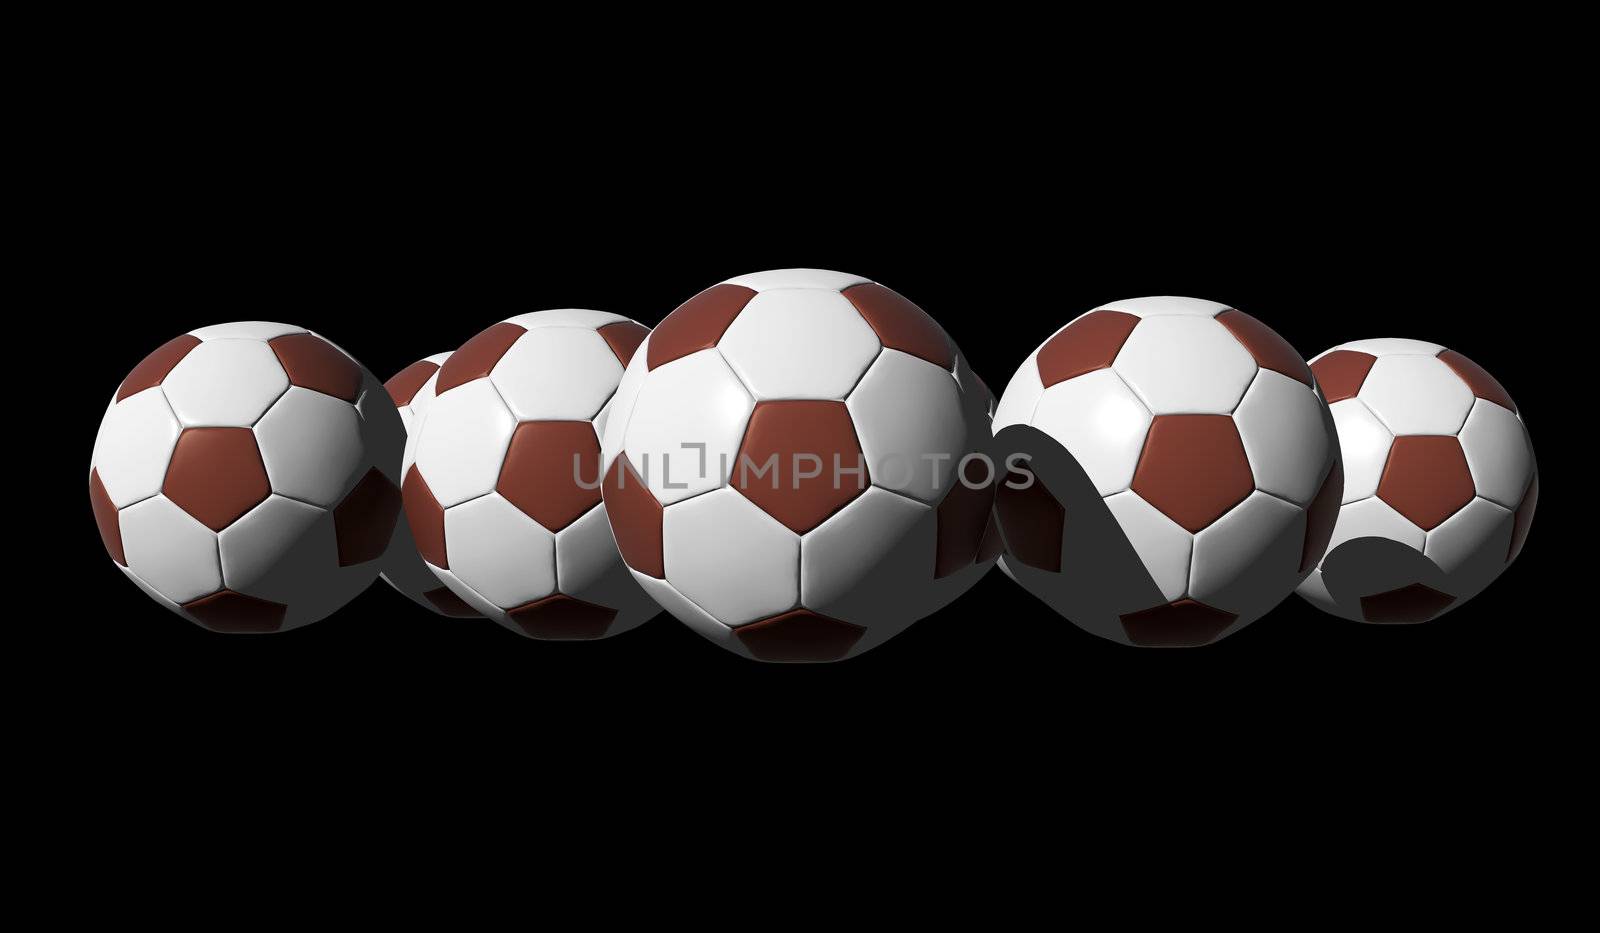 3D rendered soccer balls on black background